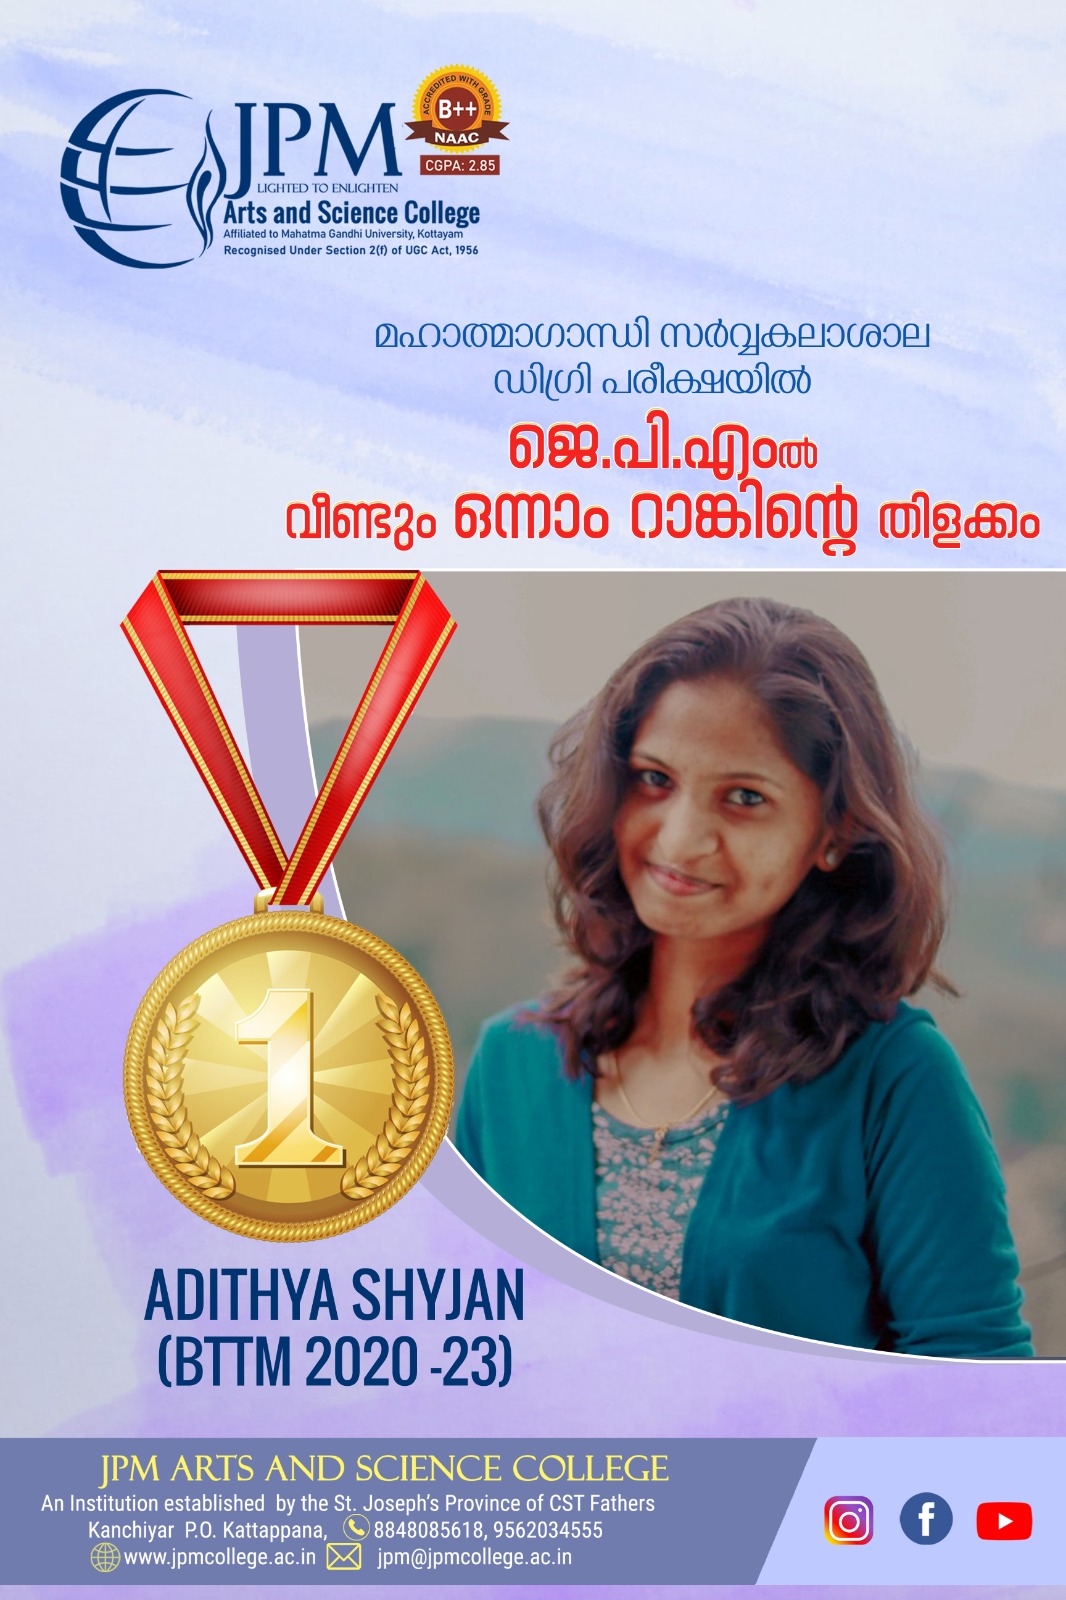 Congratulations dear Adithya Shyjan